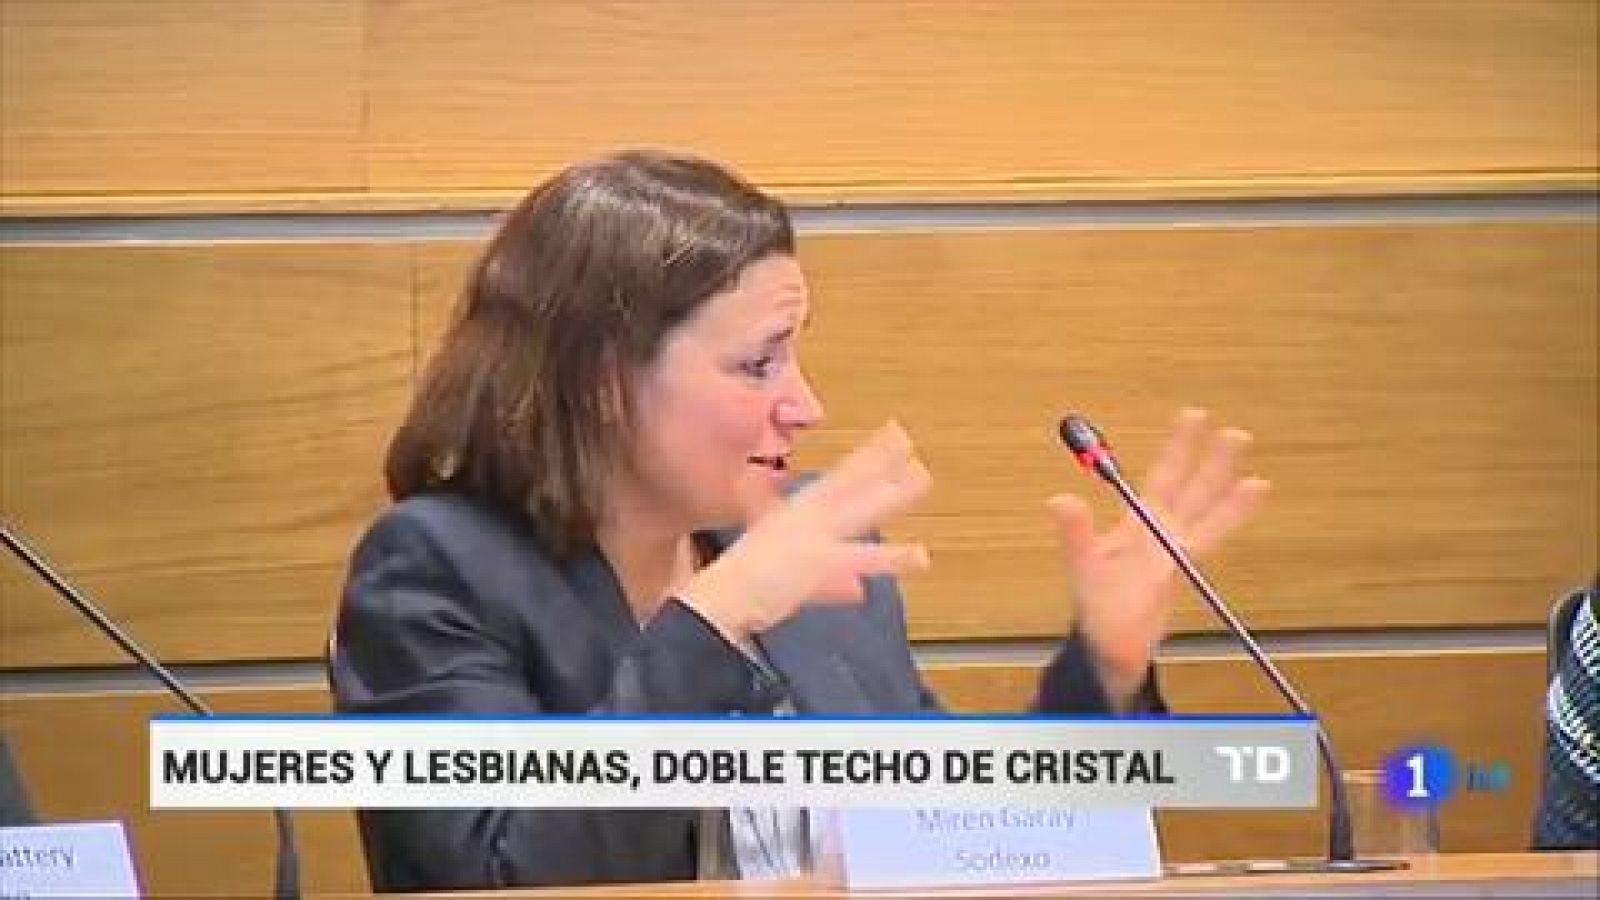 Telediario 1: El 75% de las mujeres lesbianas no quieren manifestar su condición sexual en su ambiente laboral | RTVE Play